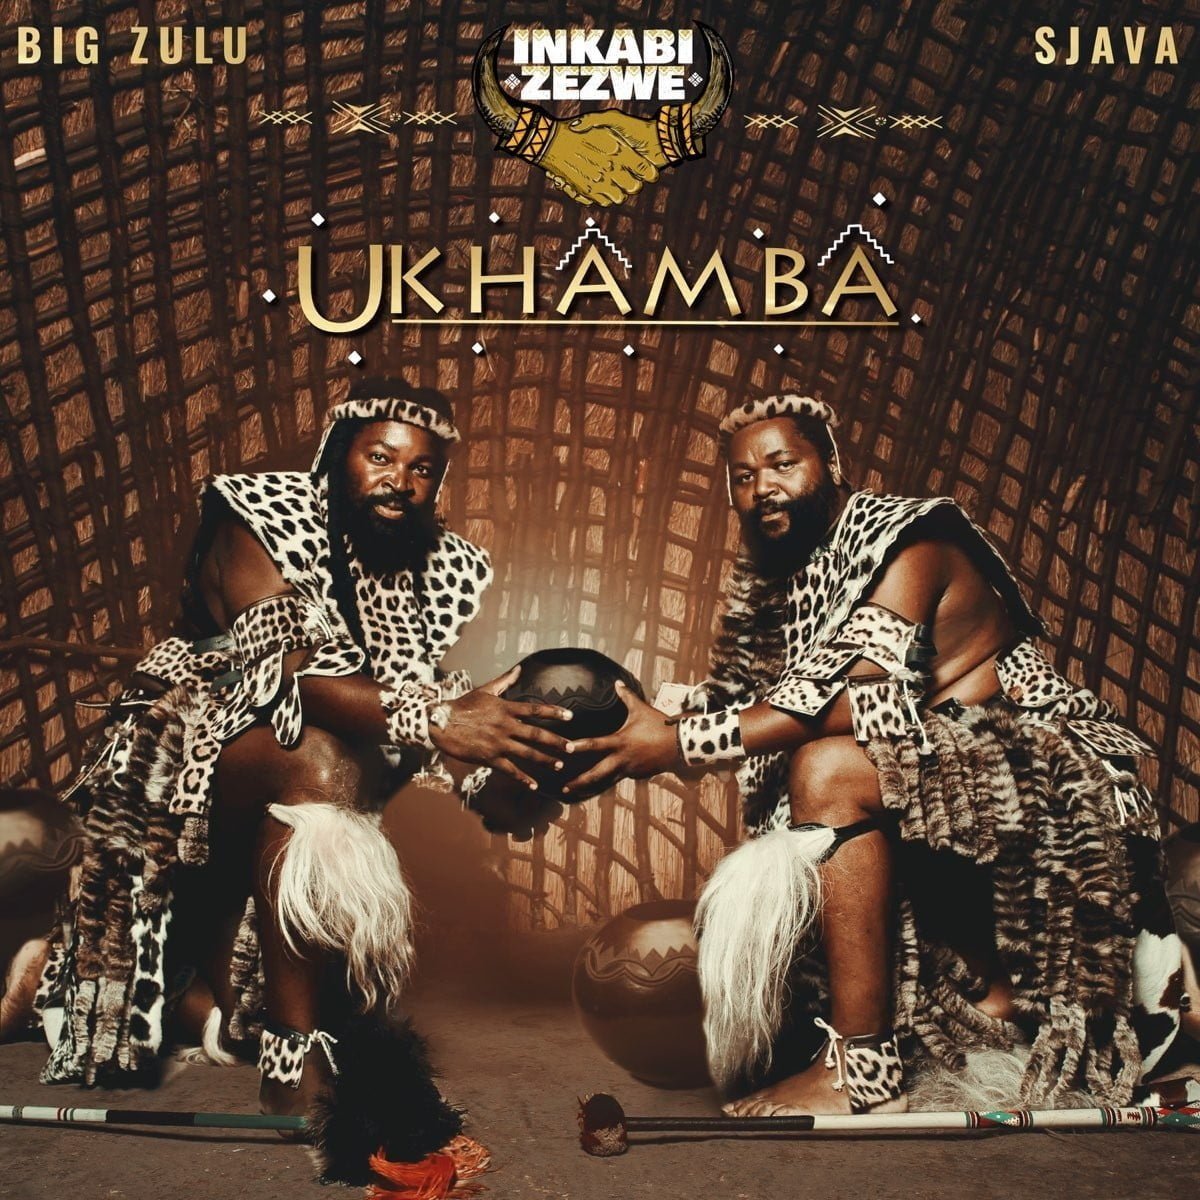 Inkabi Zezwe, Sjava & Big Zulu - Slow Jam Sase Bergville mp3 download free lyrics